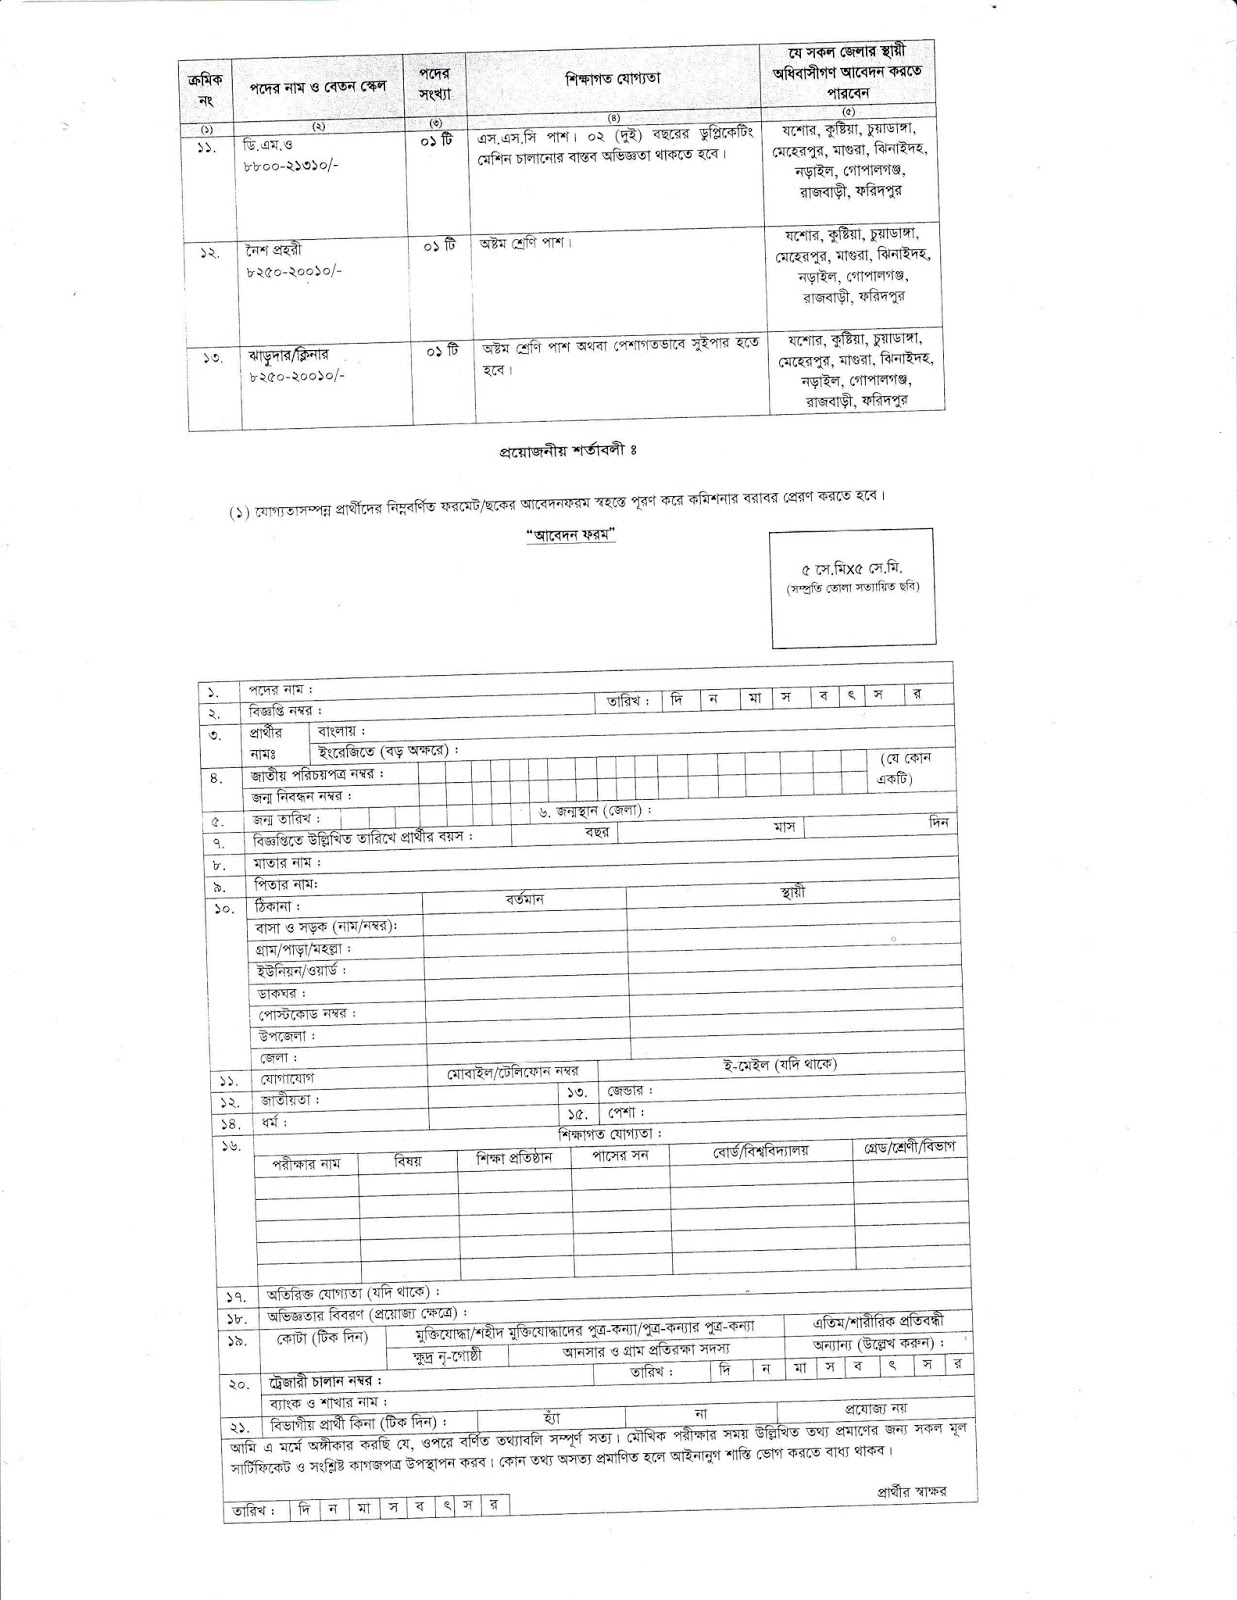 Customs, Excise and VAT commissionerate, Jessore Job Circular 2018